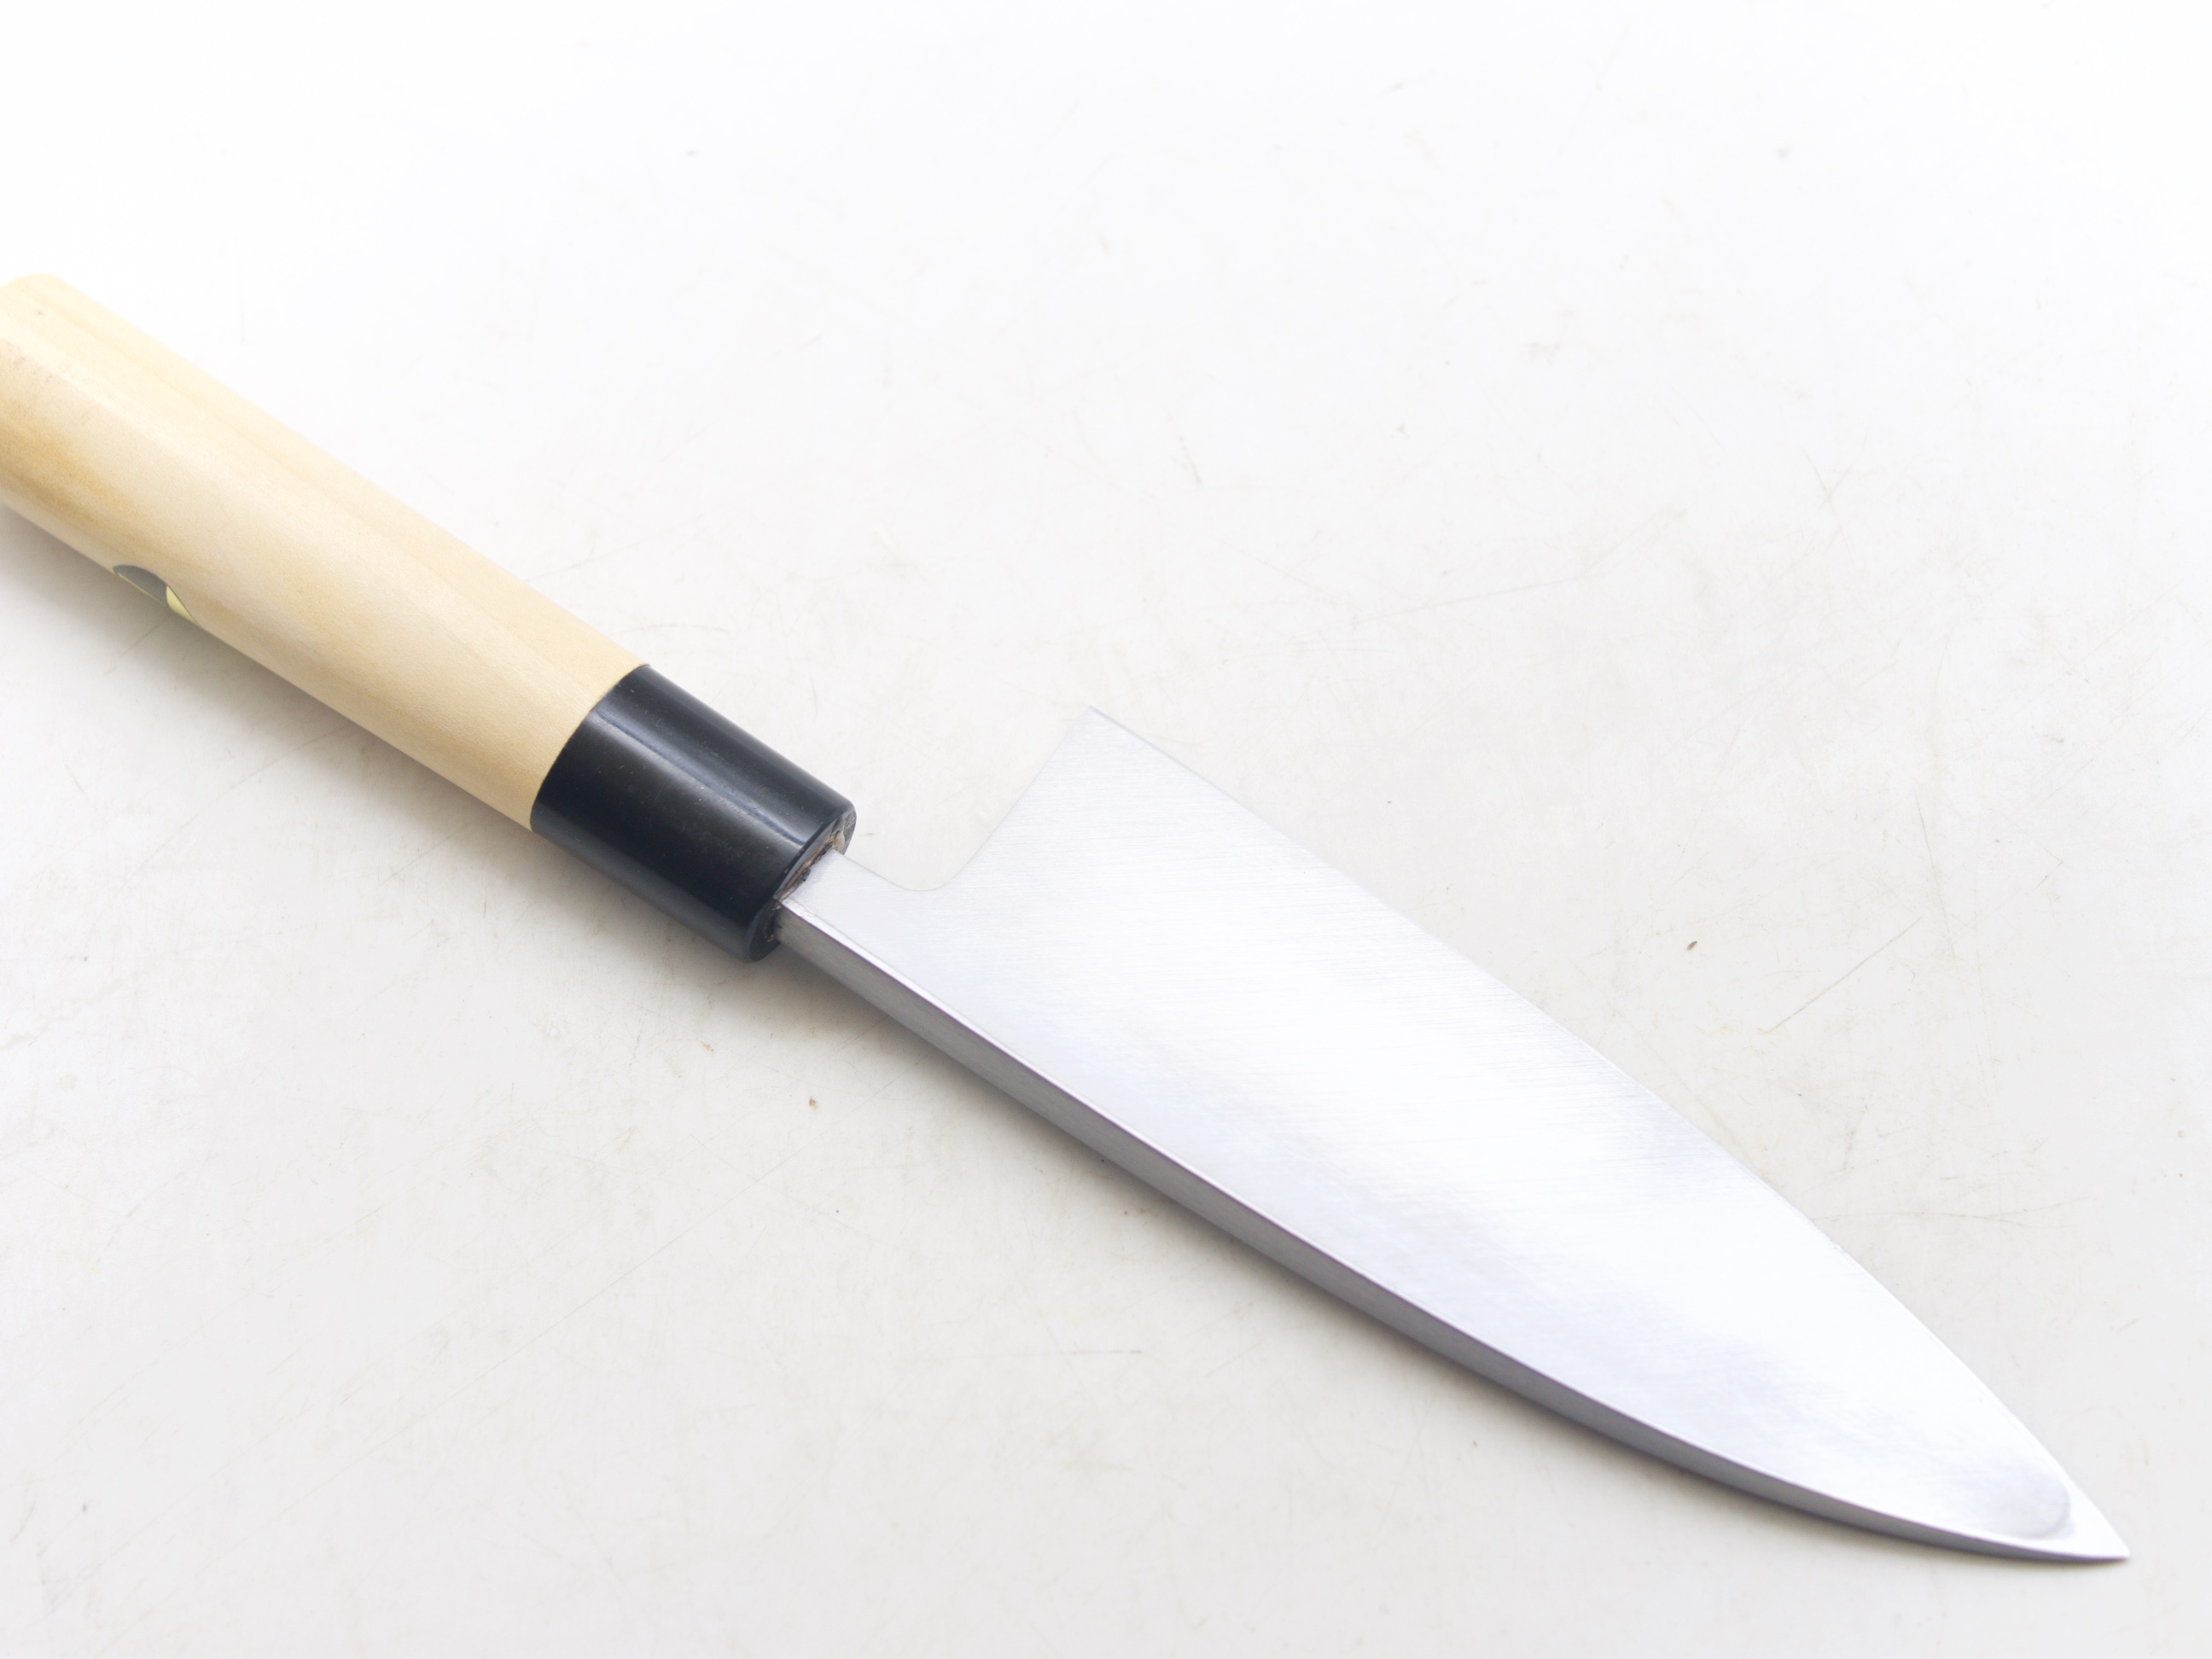 Sharpening a Knife at Hirotomo Knifeworks